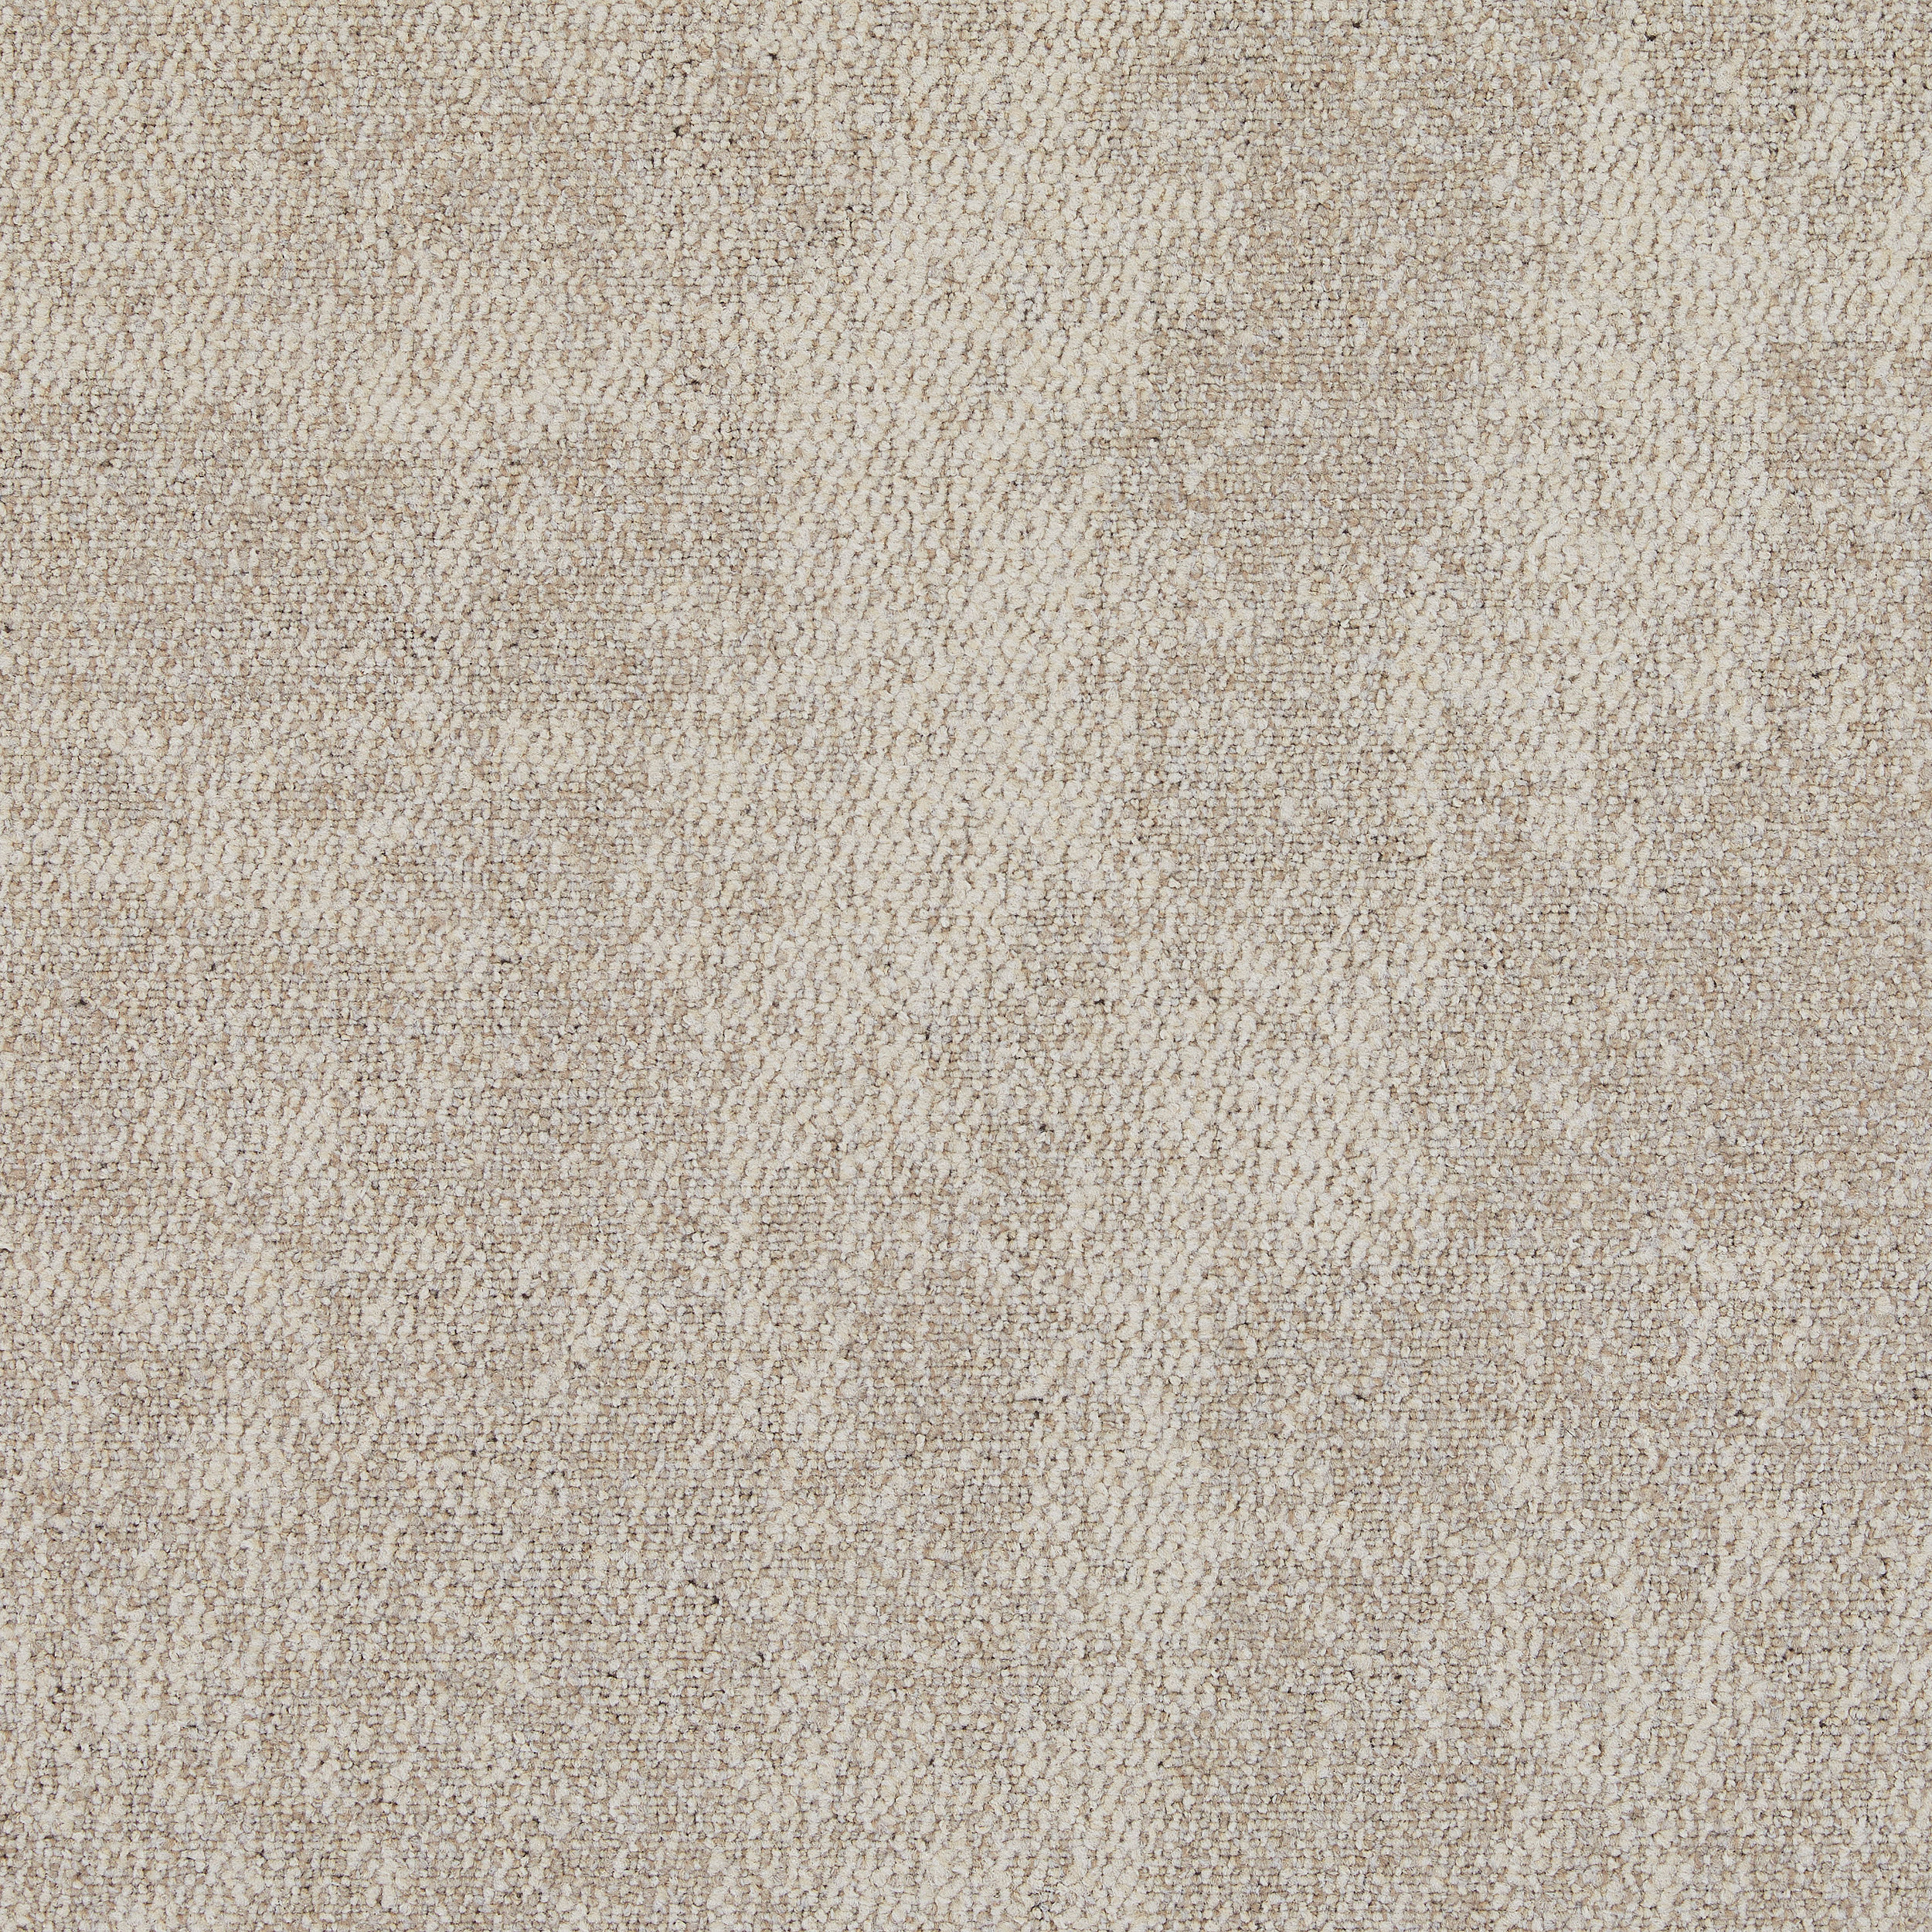 CE100 Carpet Tile in Consider Bildnummer 14